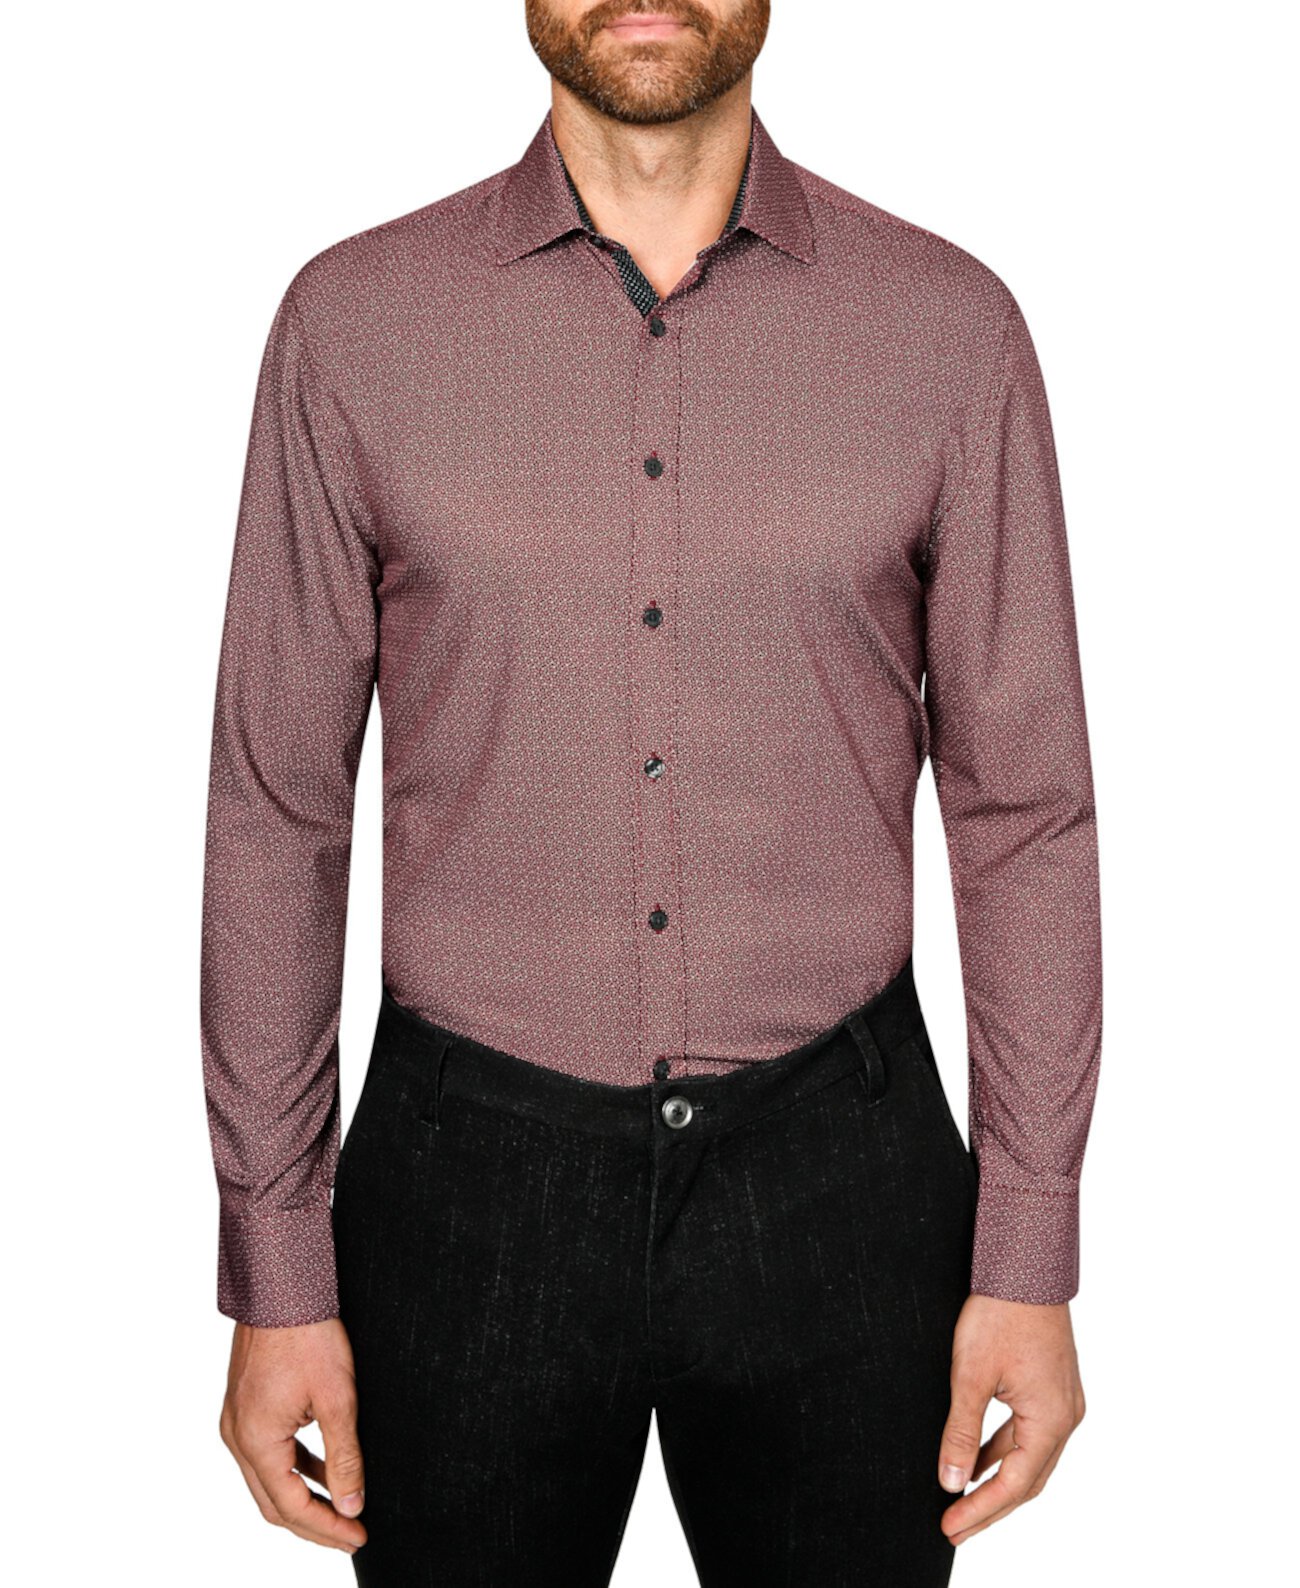 Мужская приталенная классическая рубашка с принтом в горошек и эластичным принтом без железа Society of Threads